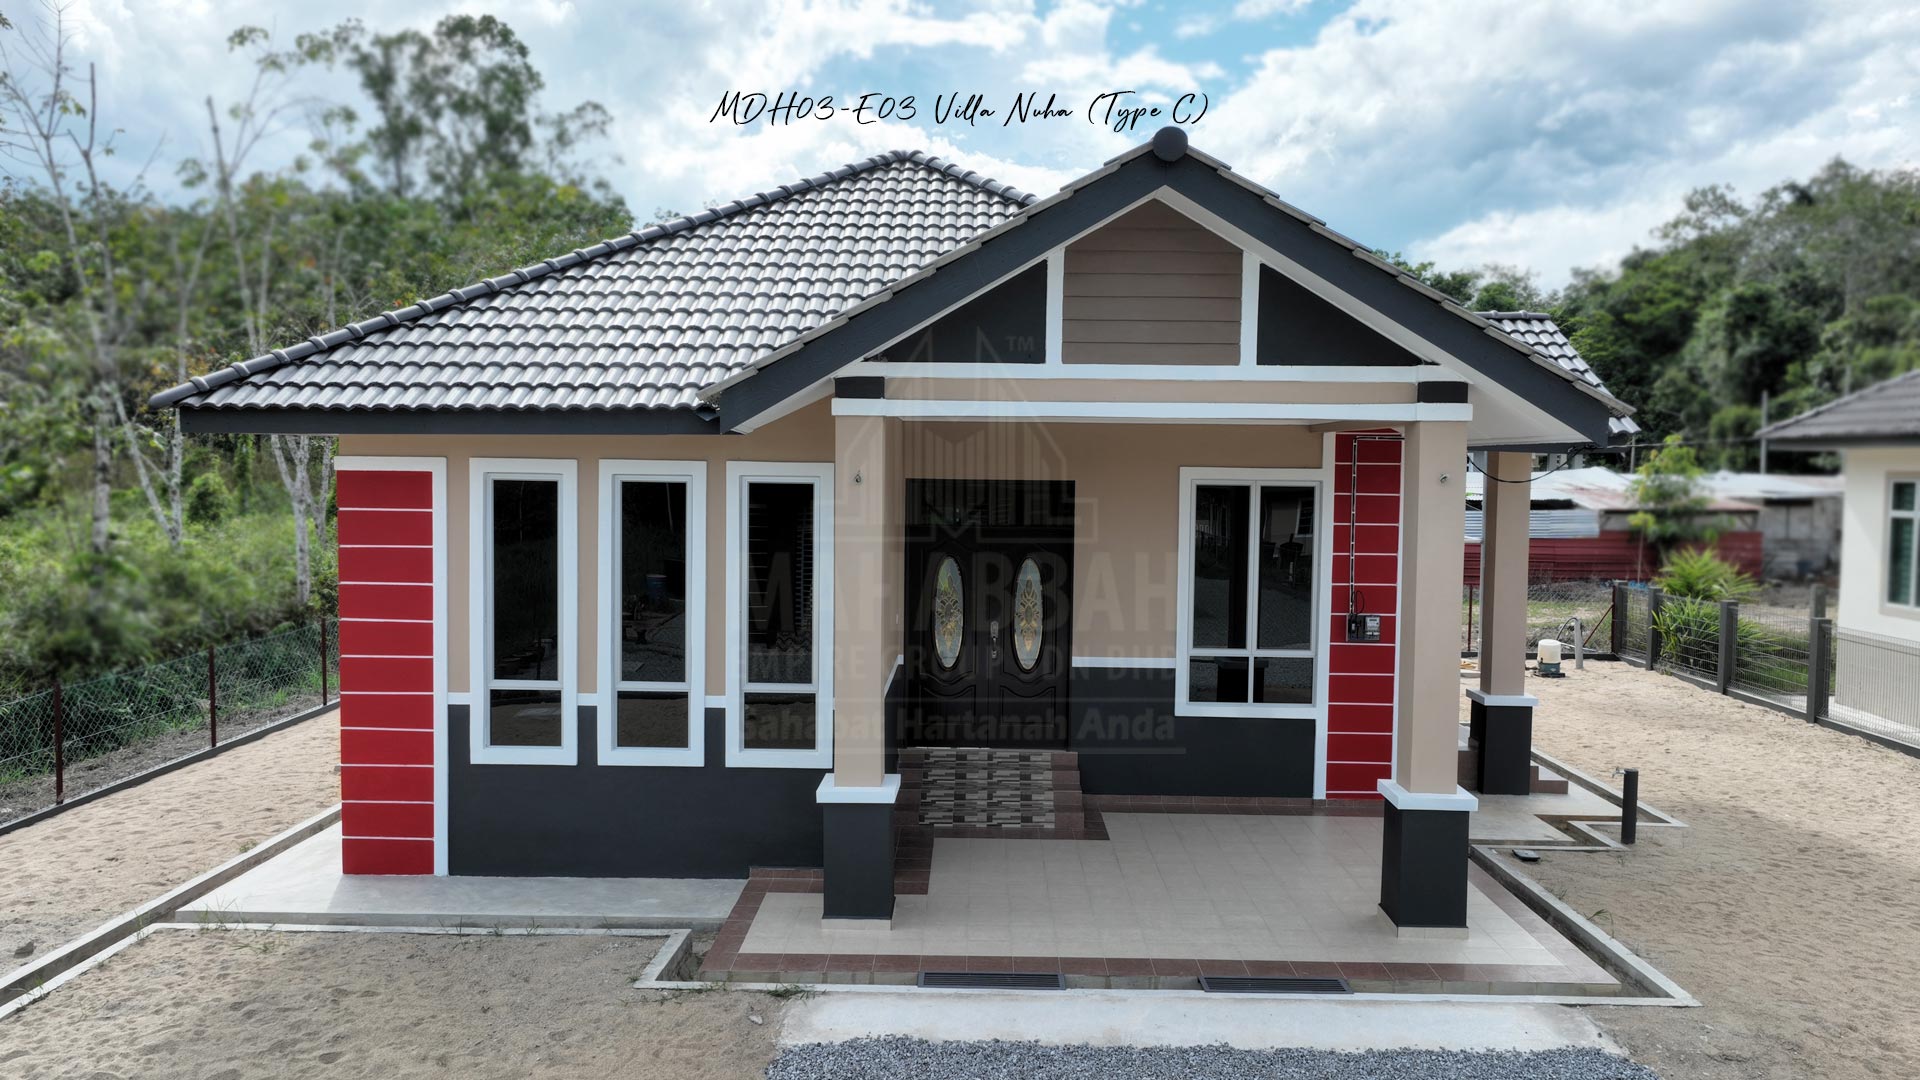 Potfolio MDH03-E03 Villa Nuha (Type C) siap dibina di Mukim Maka, Kelewek Tanah Merah Kelantan